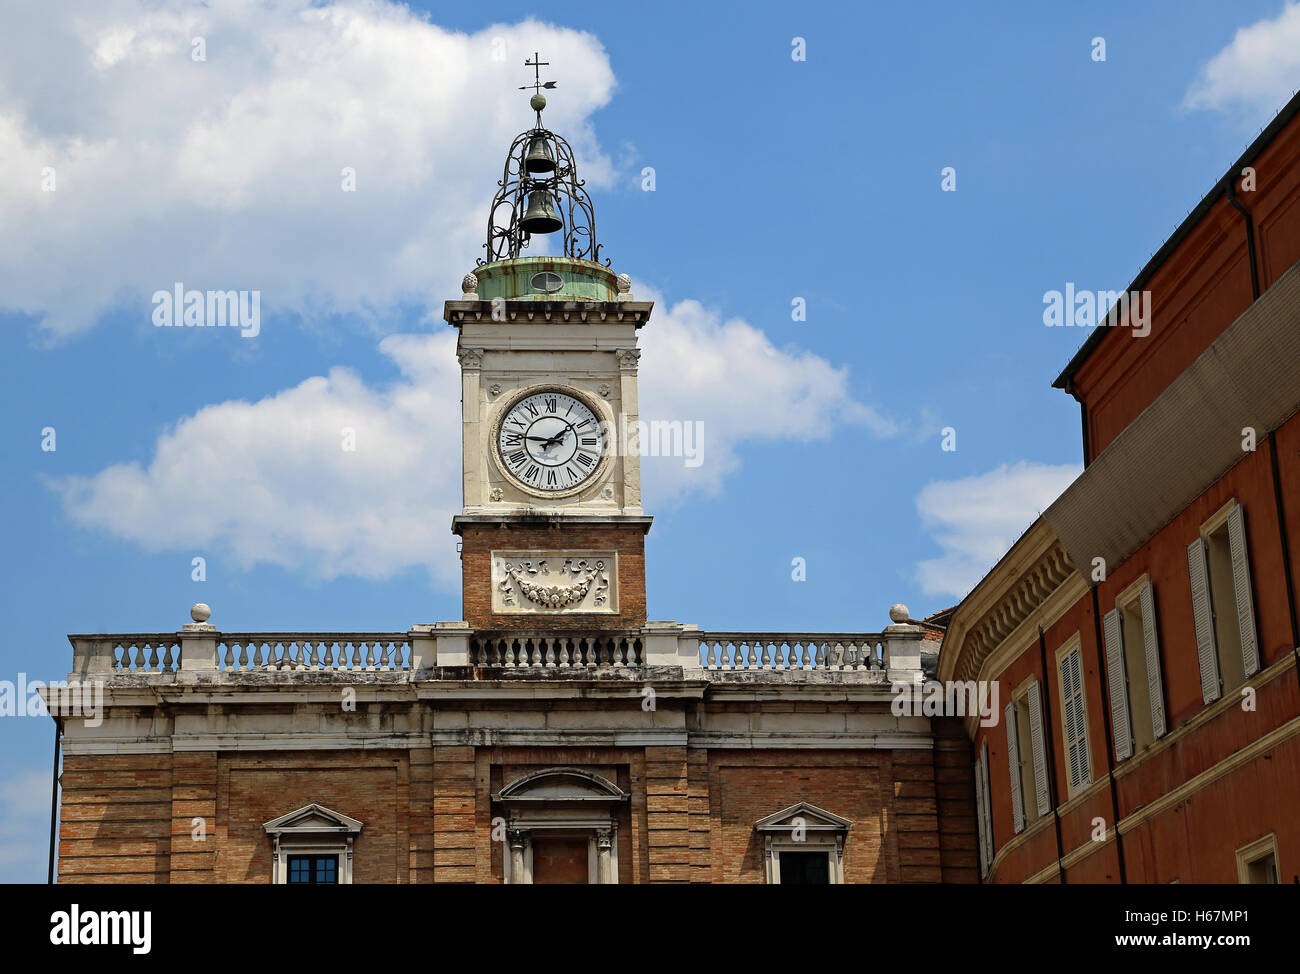 Antica torre dell'orologio di Piazza del Popolo nella città di Ravenna in Italia centrale Foto Stock